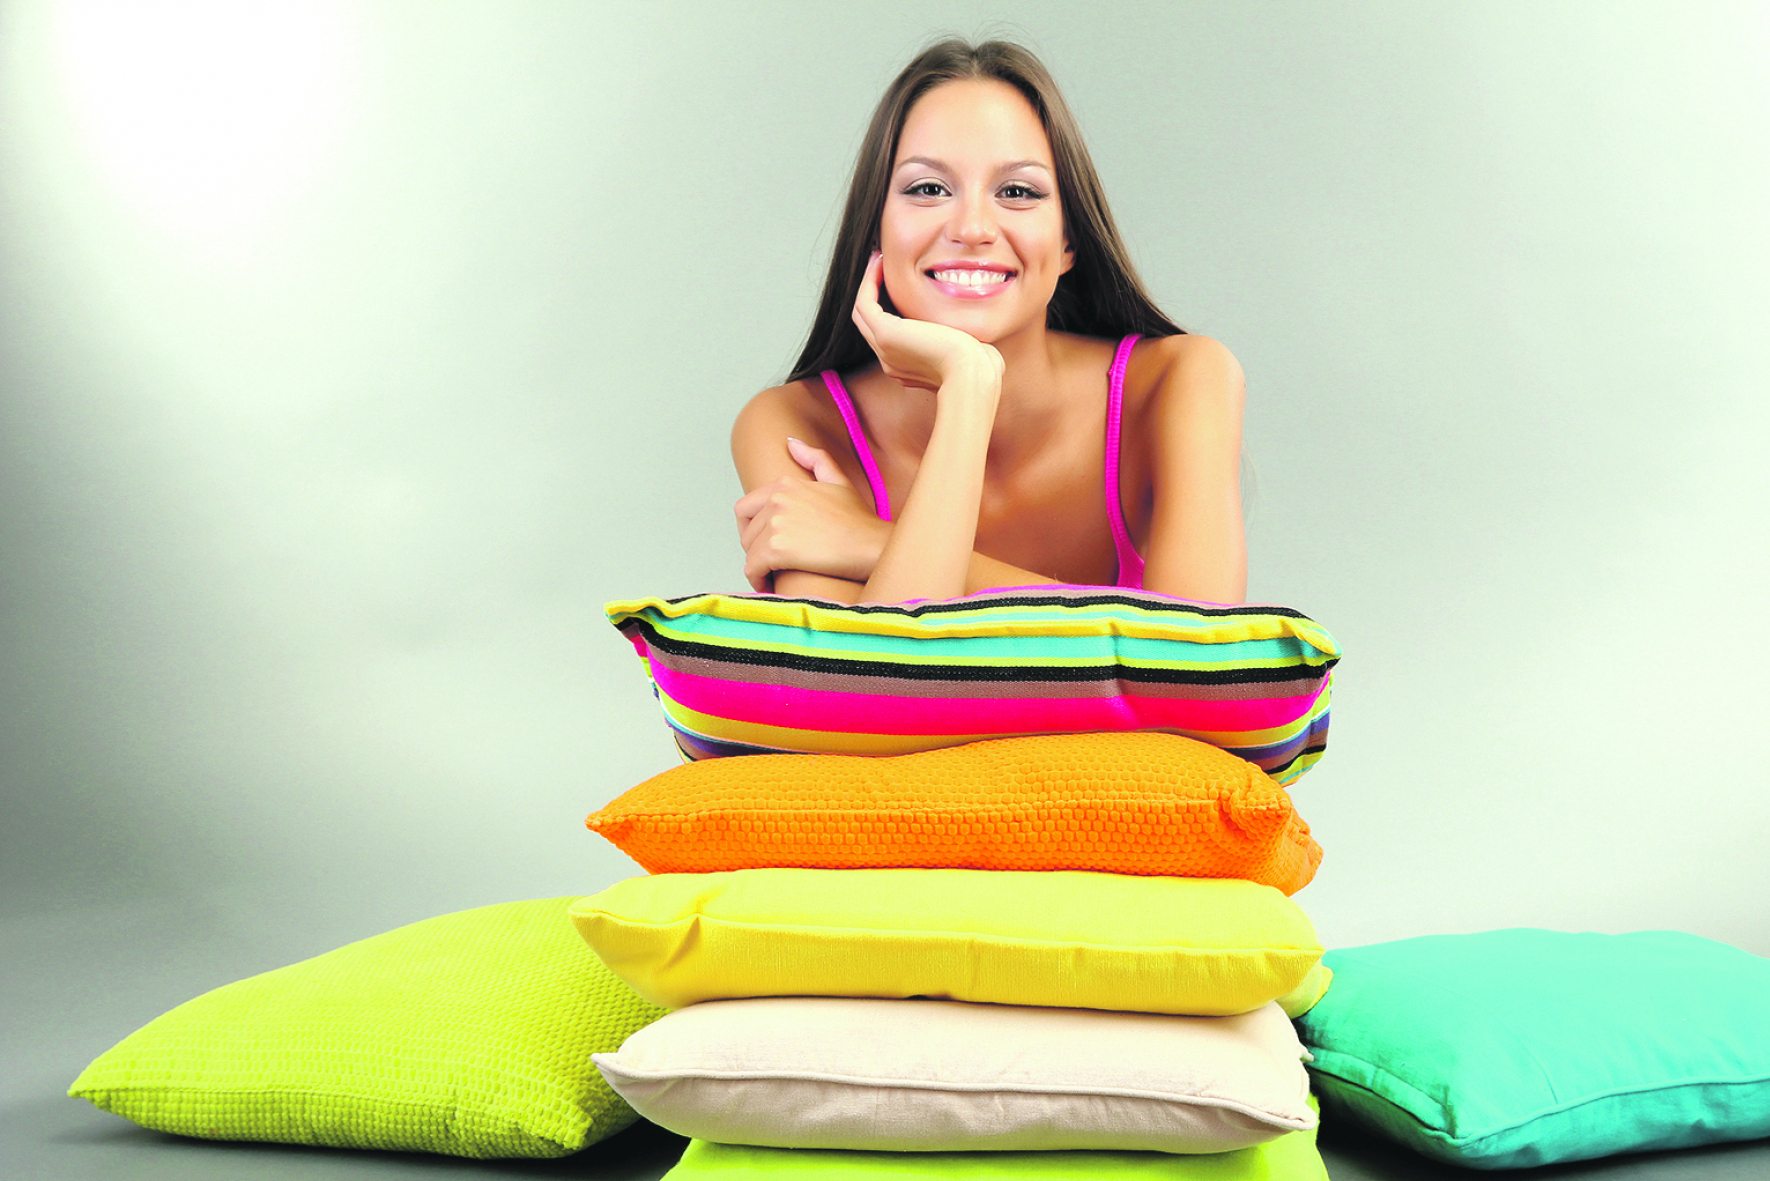 VIŠE OD DETALJA Upotrebite jastuke raznih boja i veličina za dekoraciju životnog prostora